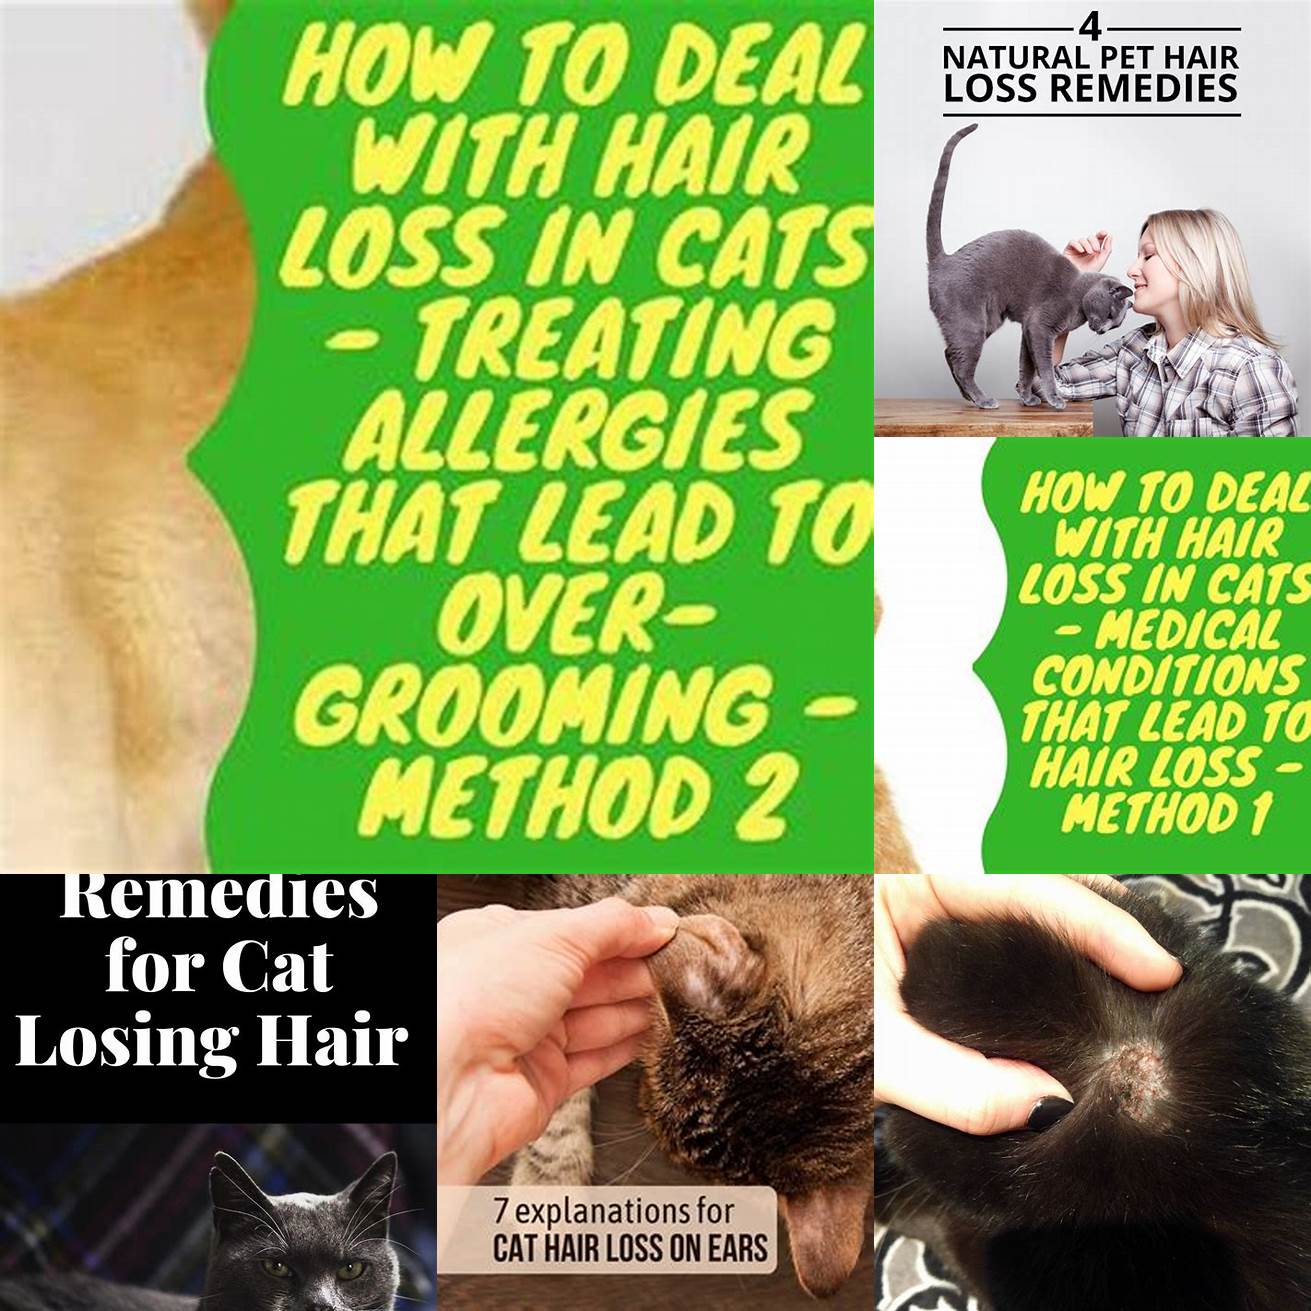 Q Can I treat my cats hair loss at home